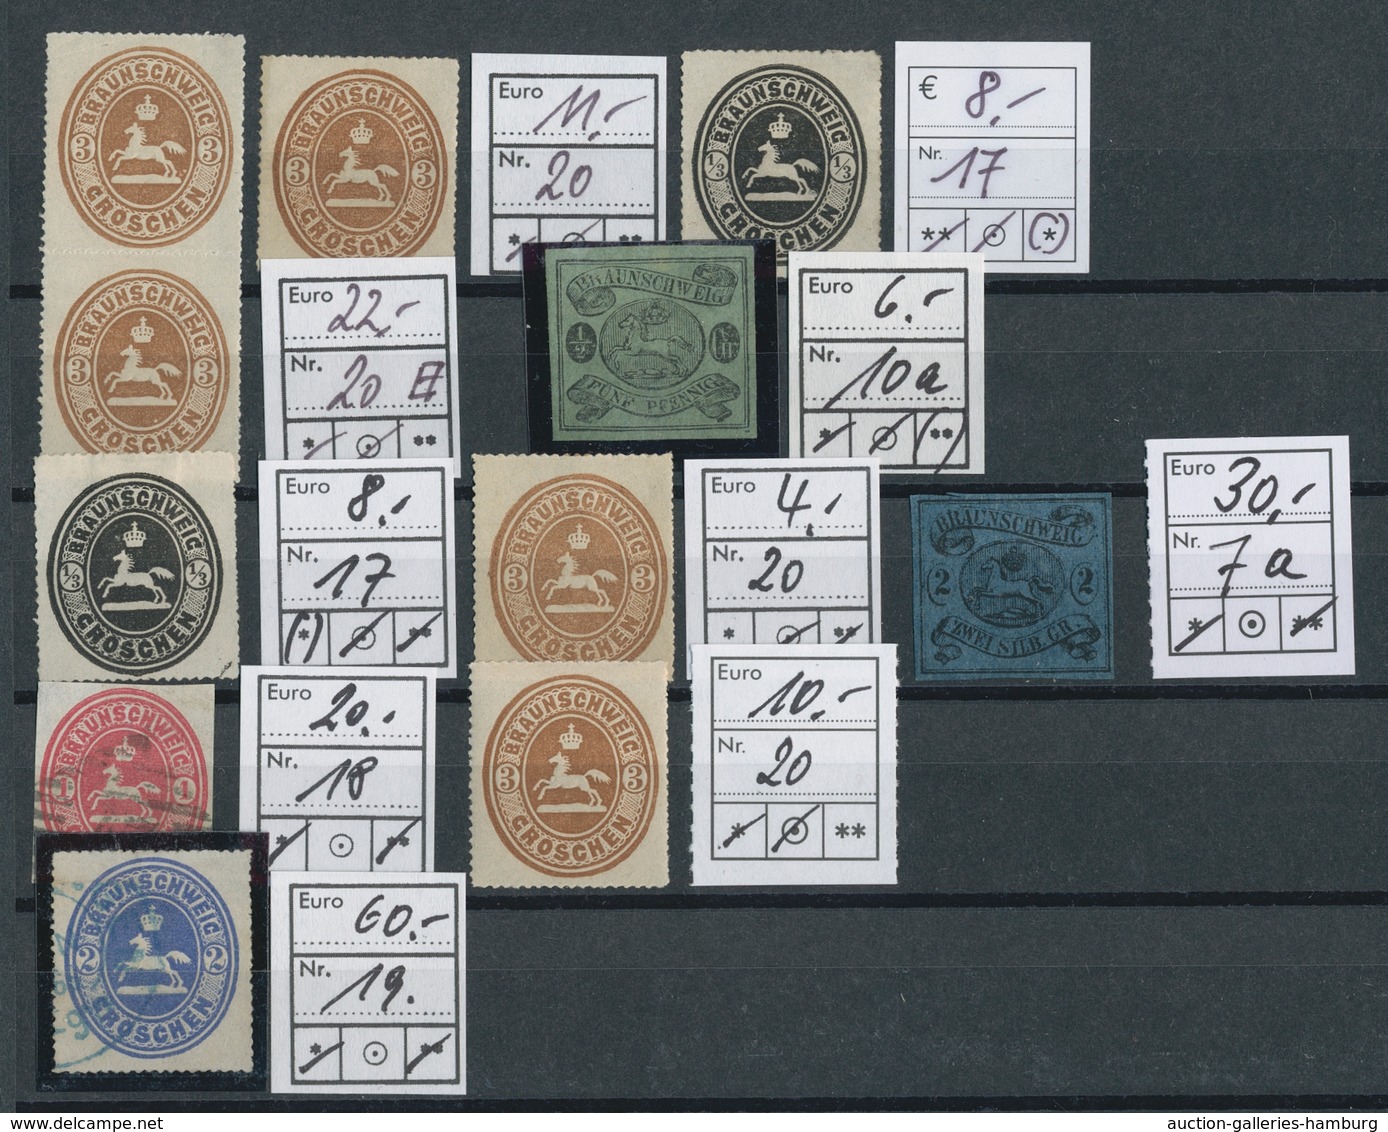 Braunschweig - Marken und Briefe: 1852-1867, reizvolle Partie von über 90 Werten auf Steckkarten, üb